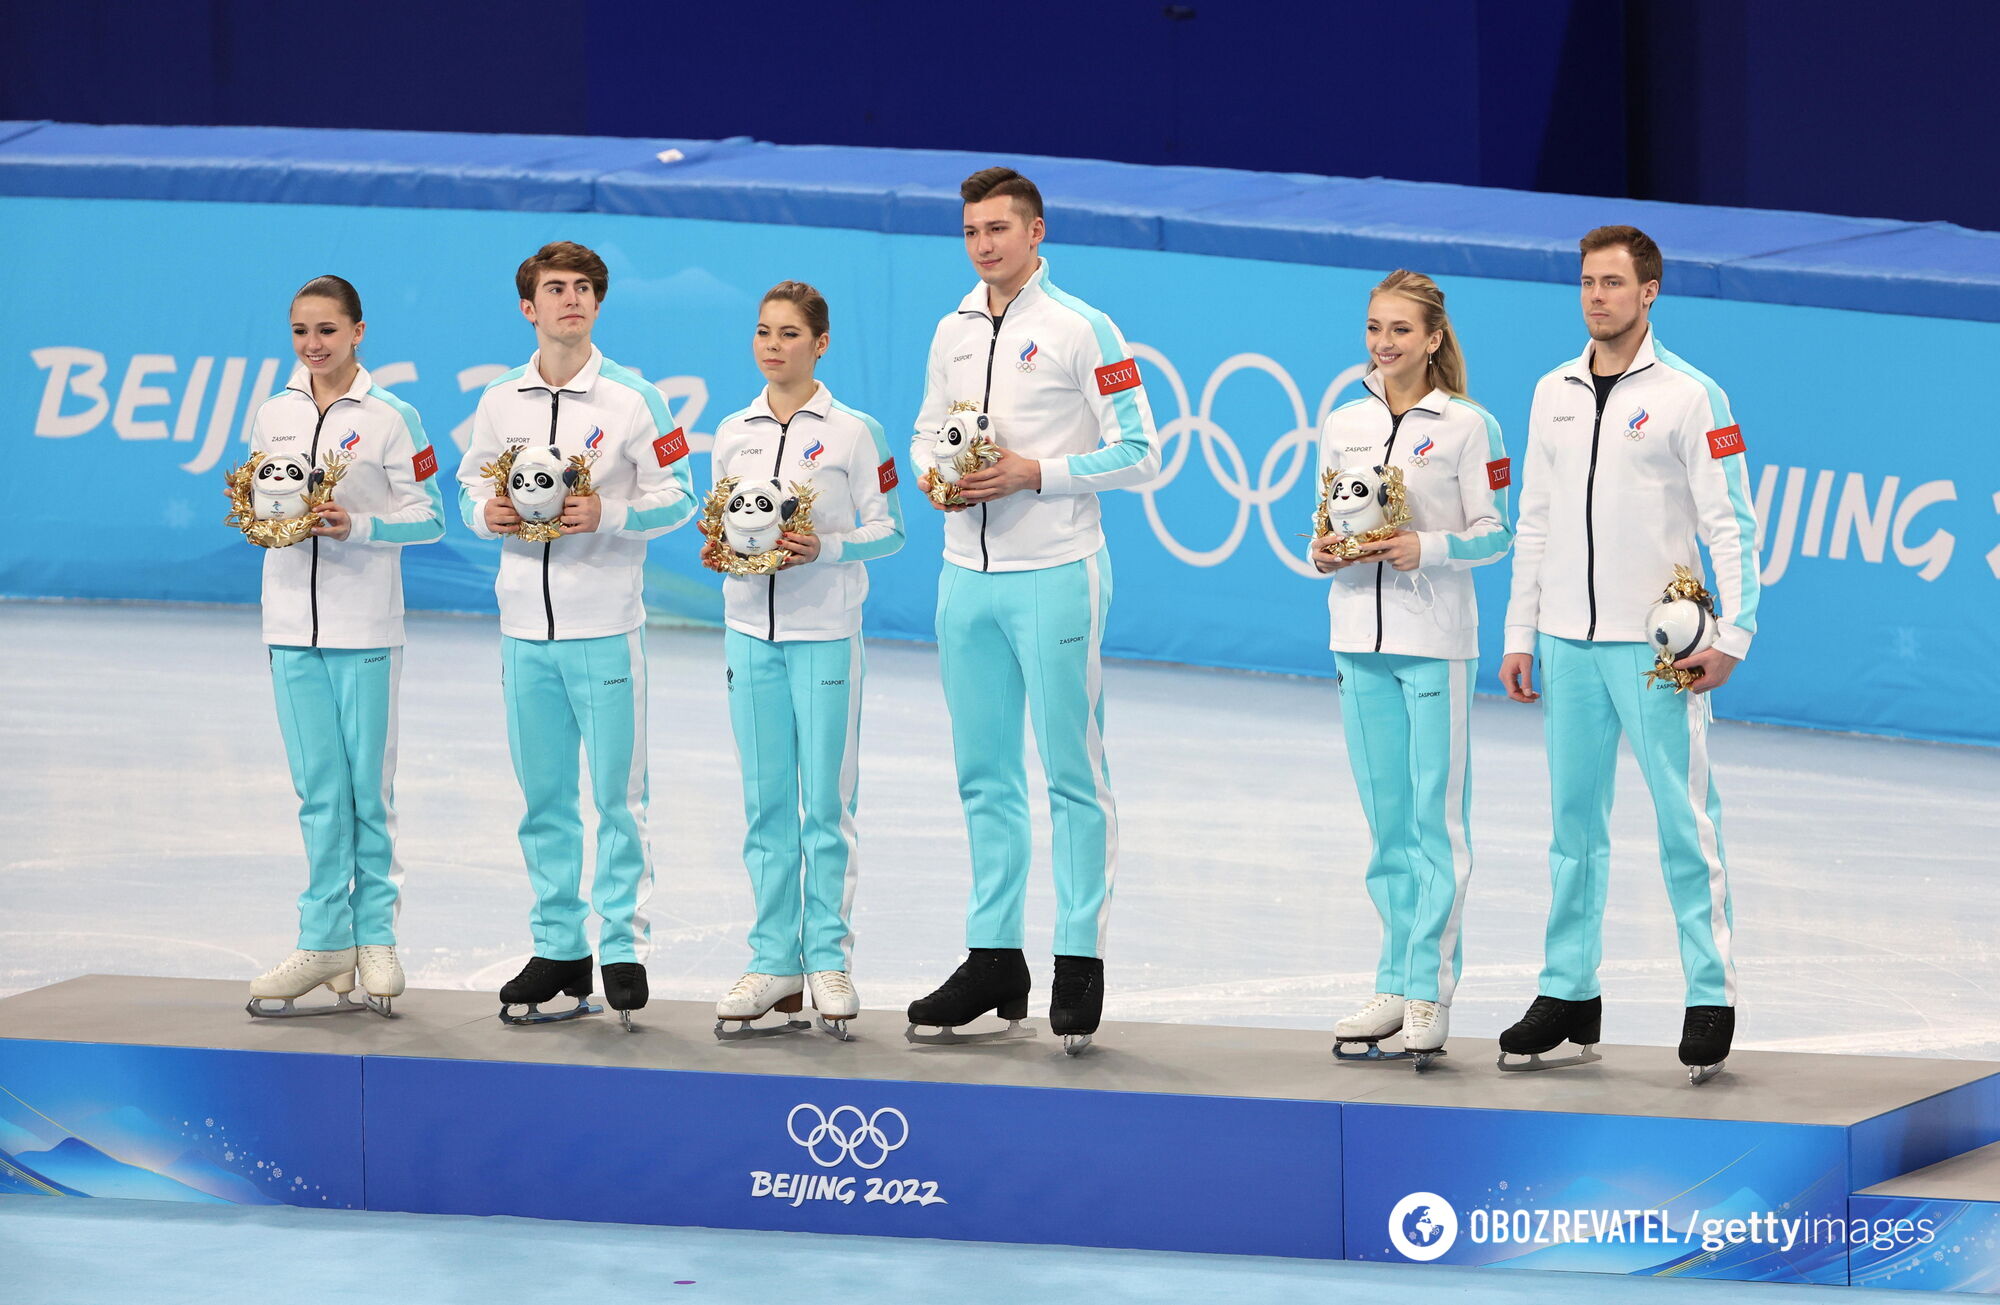 ''Kompletny głupiec!'' Mistrzyni olimpijska doprowadziła Rosjankę do szału swoimi słowami o Walijewej